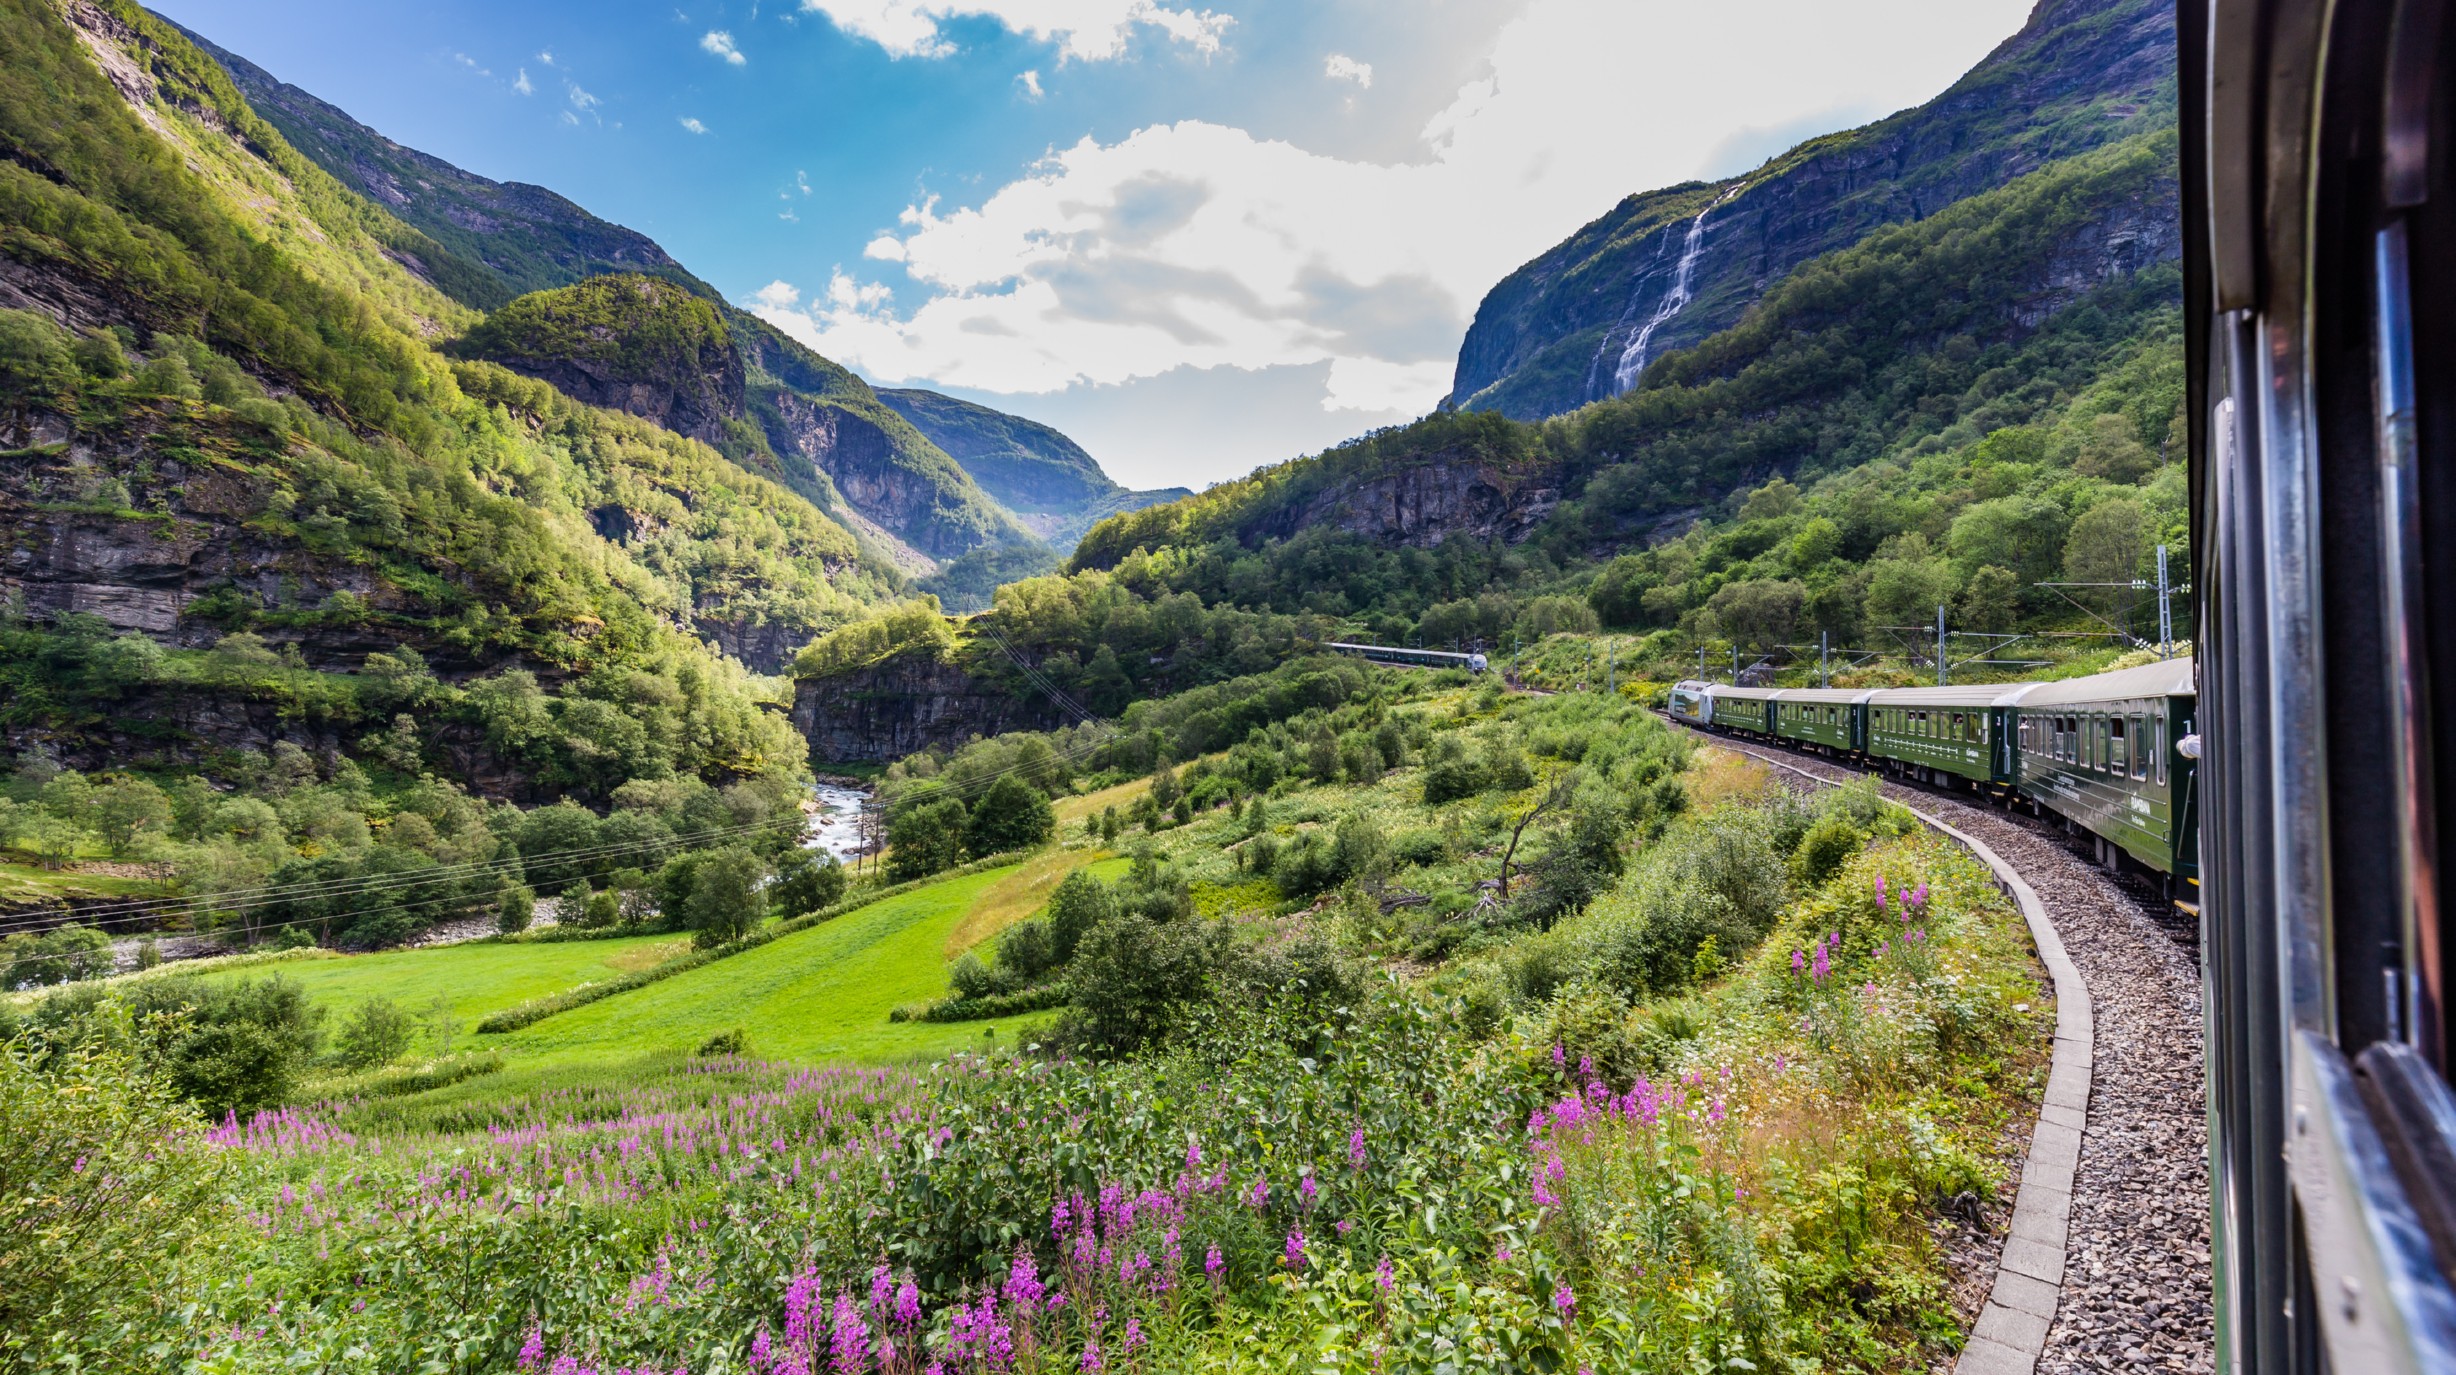 Groepsrondreis per trein Olso,  Flåm, Bergen en Stavanger   